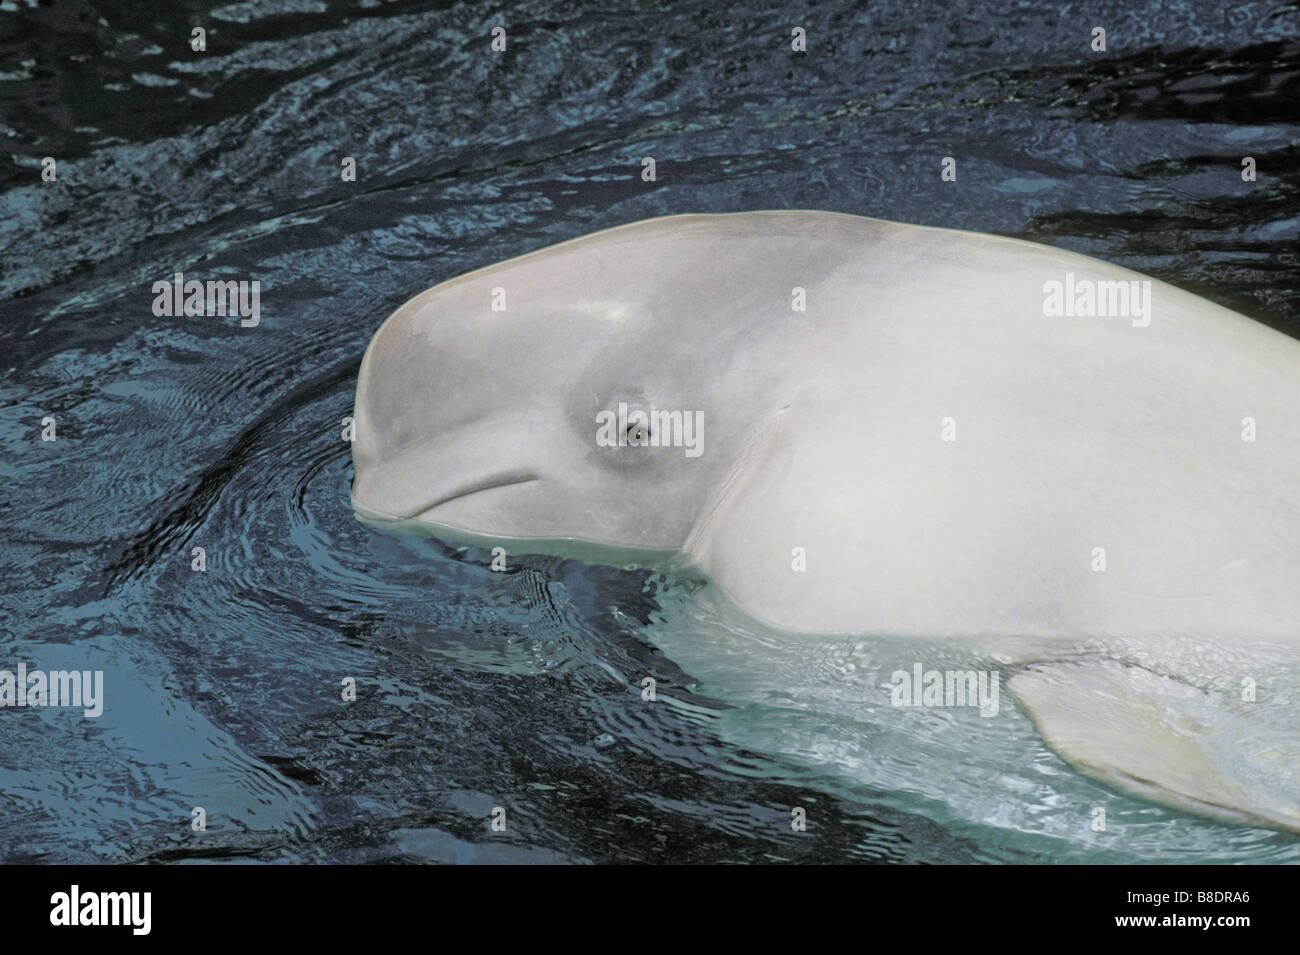 tk0462, Thomas Kitchin; Beluga whale Stock Photo